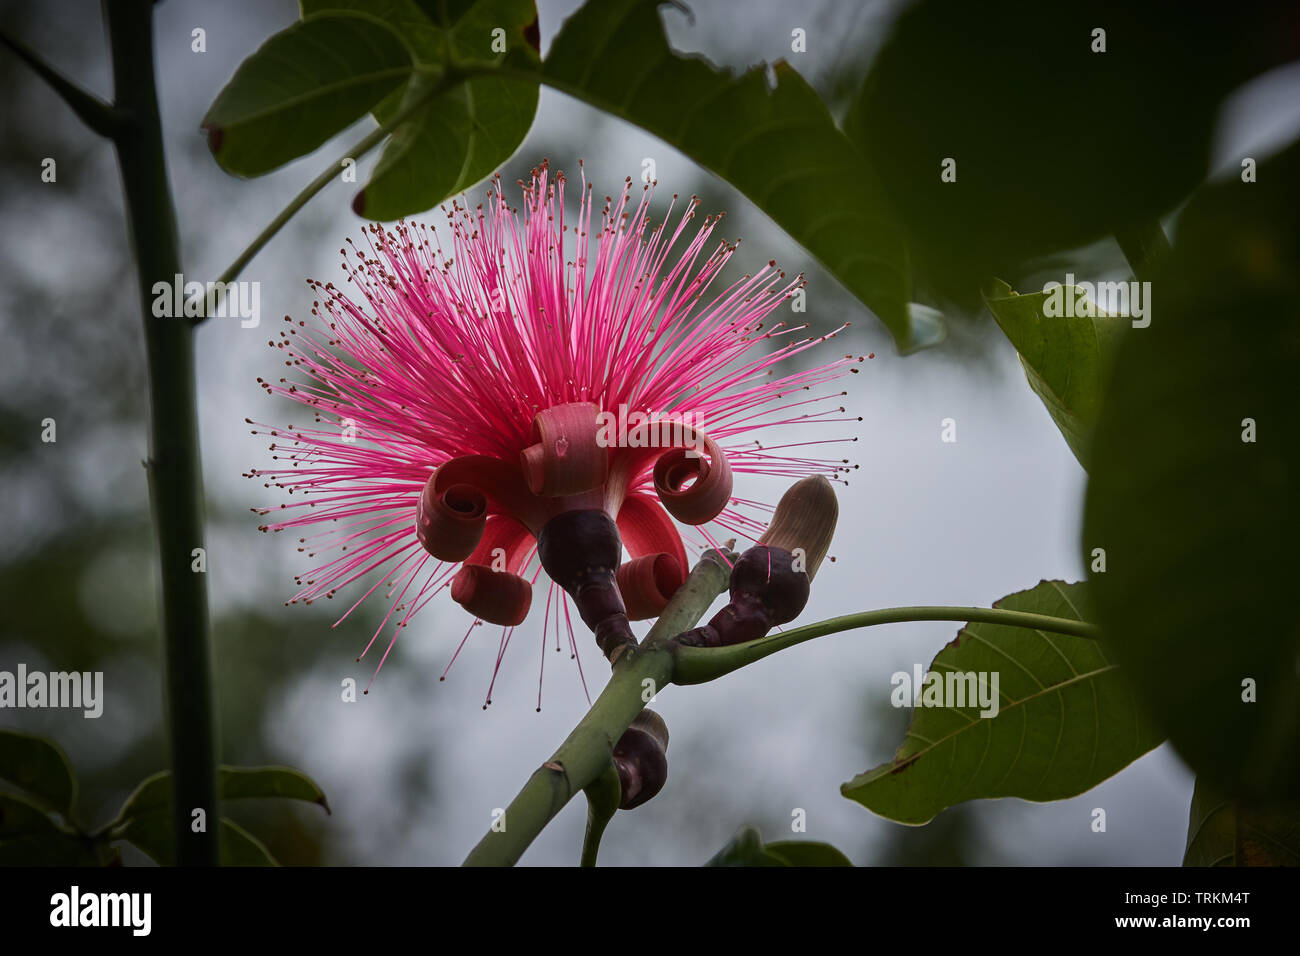 pachira ellipticum, Bombacaceae, Bombax, Pachira aquatica, Blume,Flower, rot,red, Glueckskastanie, Mexiko, Stock Photo